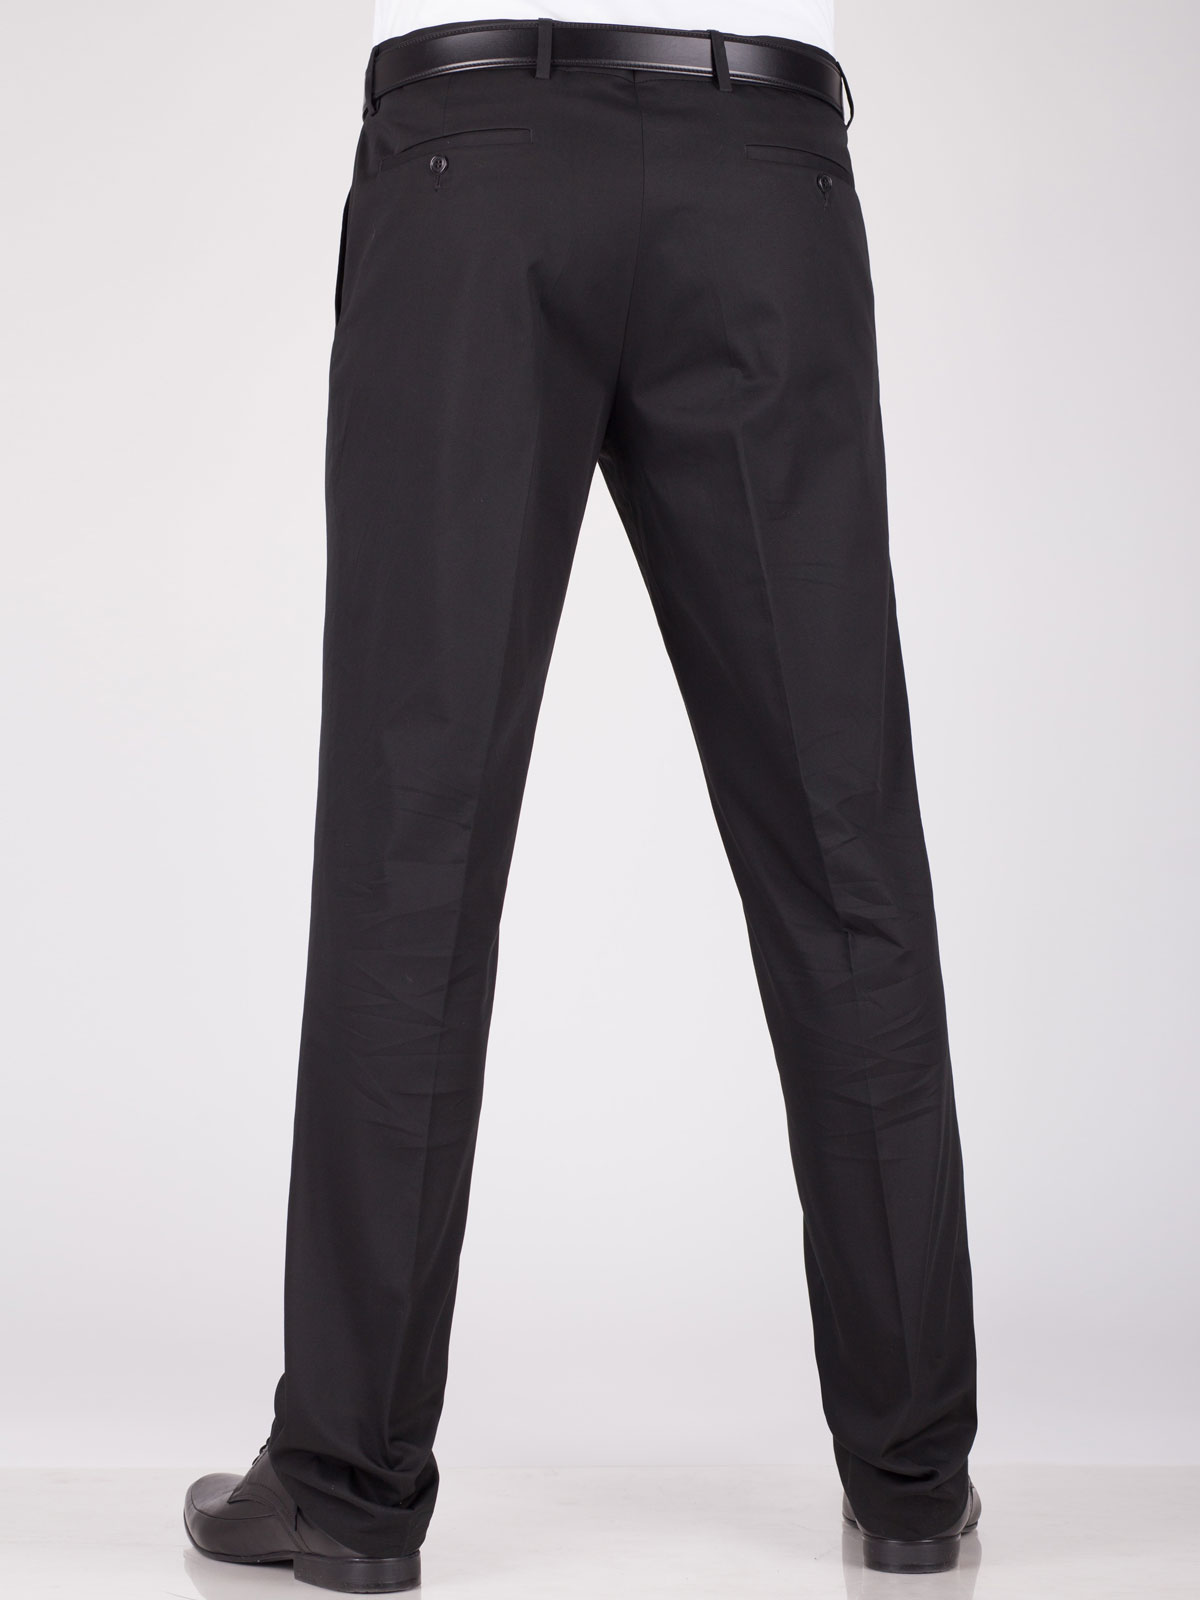 Pants black classic - 63002 € 16.31 img2